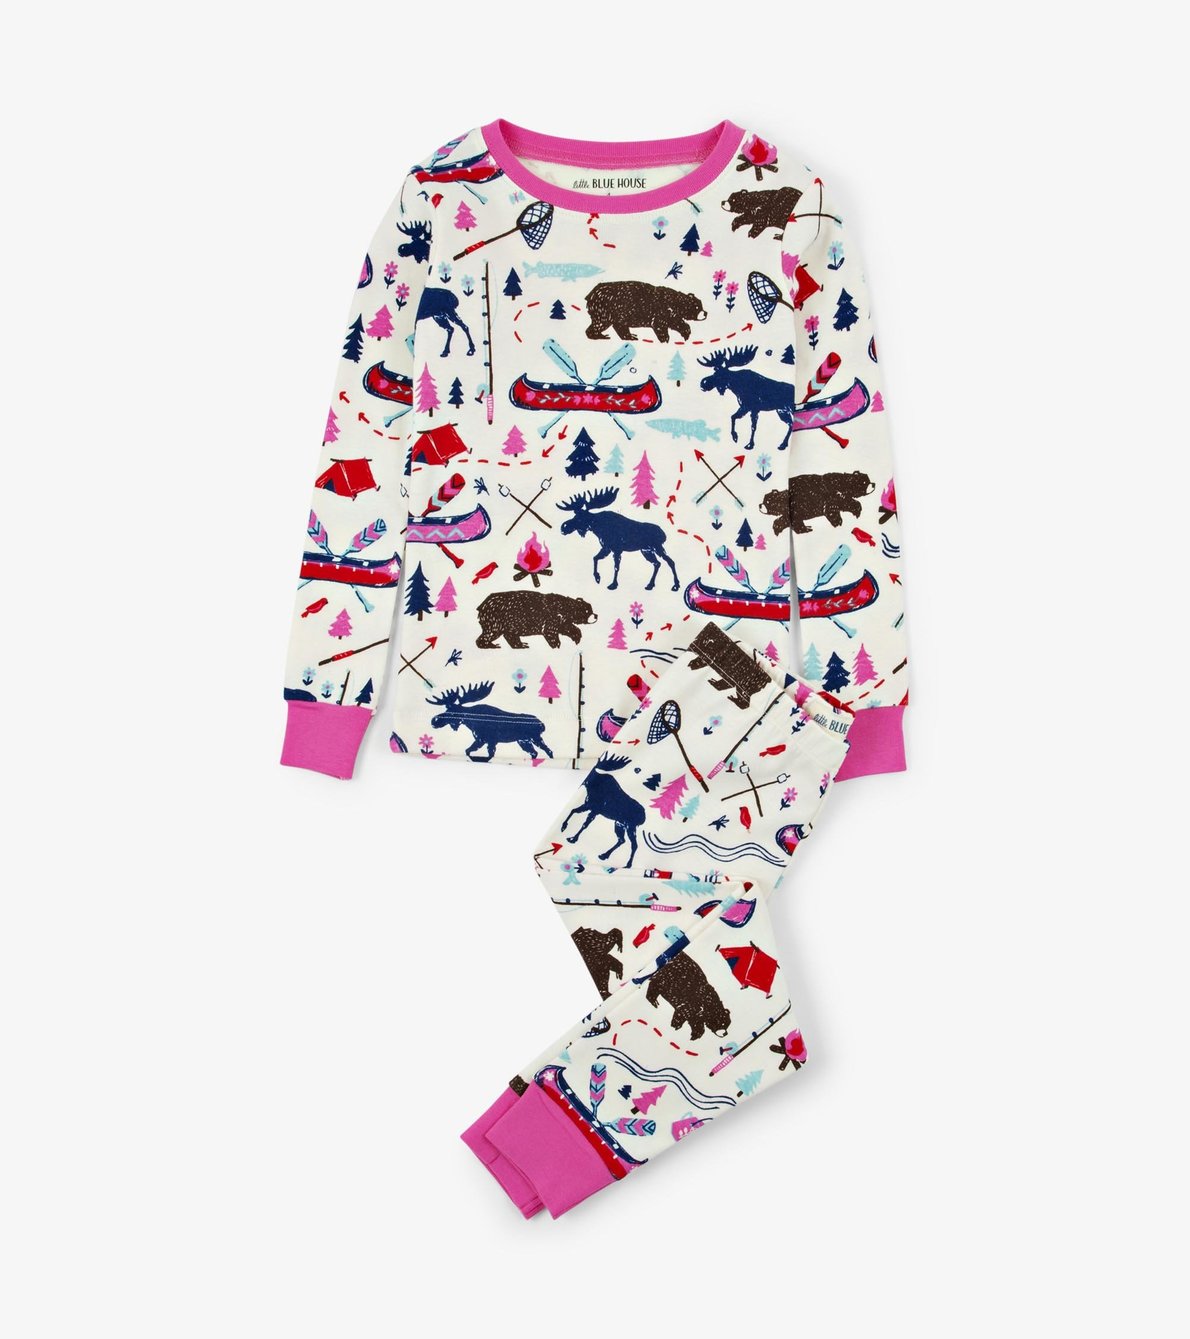 Agrandir l'image de Pyjama pour enfant – Camping sauvage rose